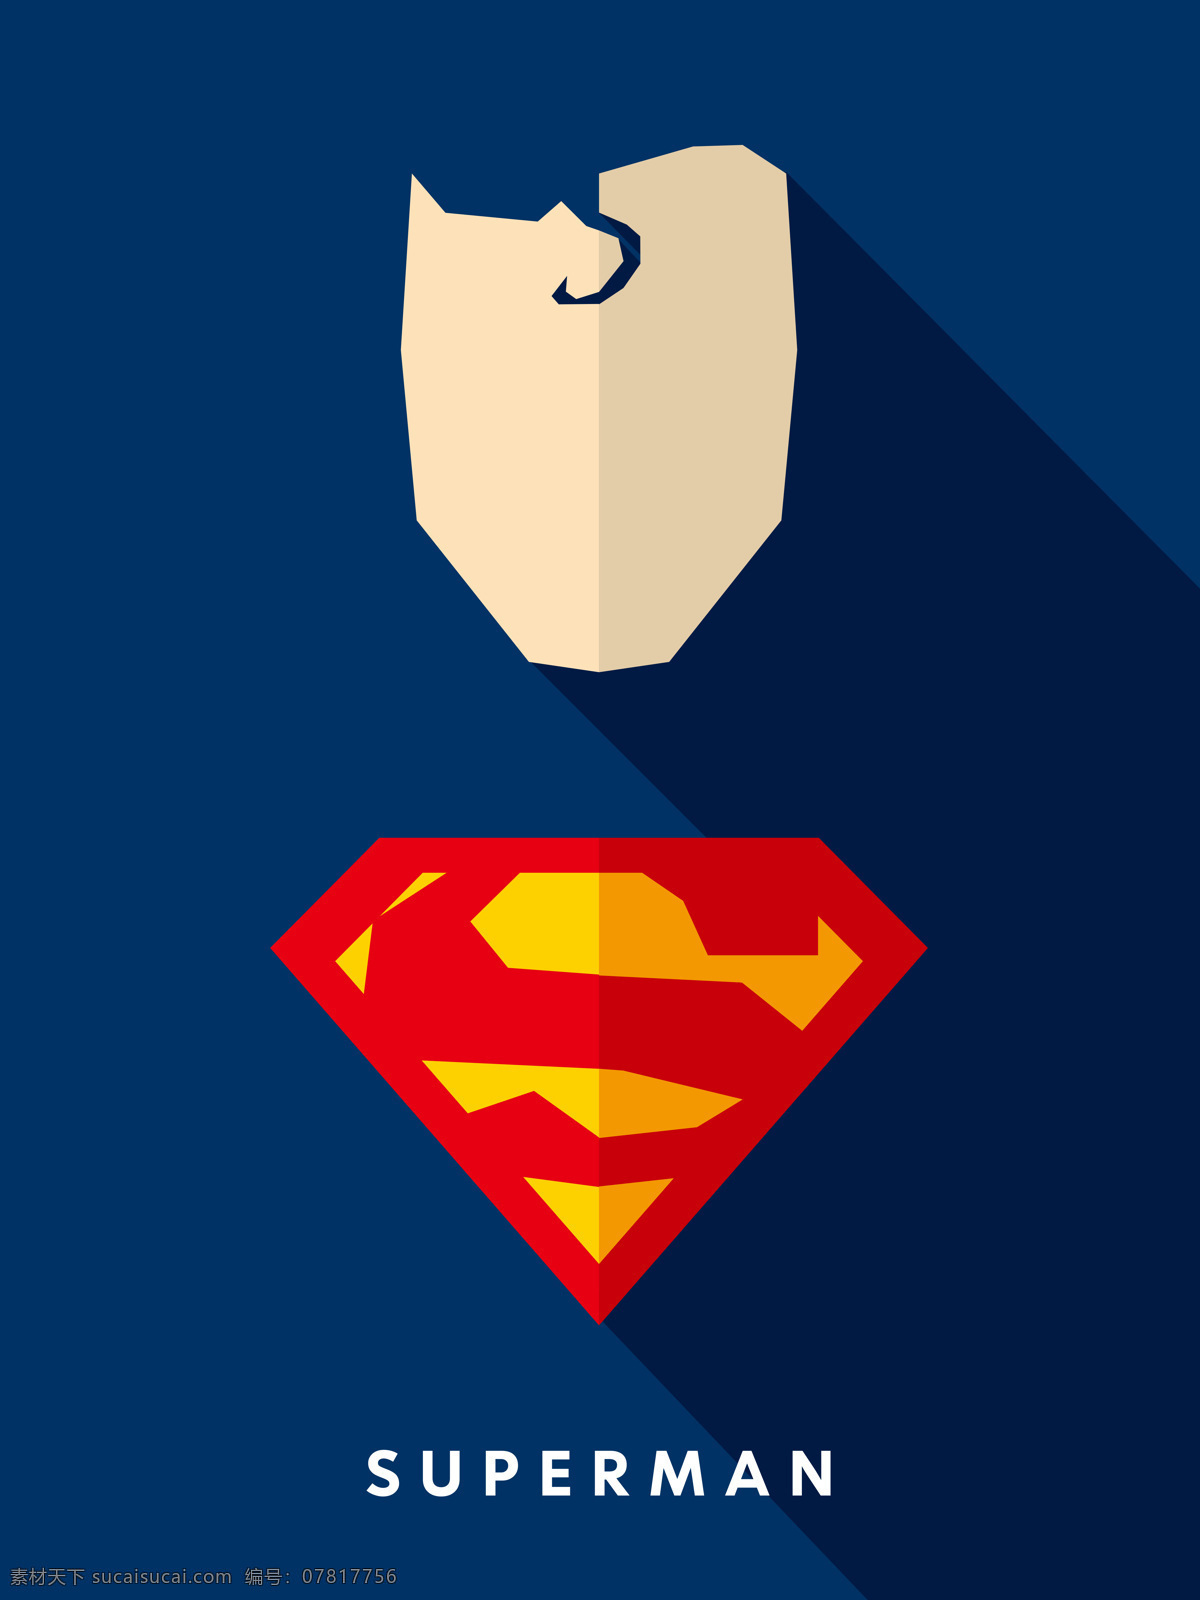 超人 superman dc 超级英雄 漫画英雄 装饰画 高清素材 文化艺术 影视娱乐